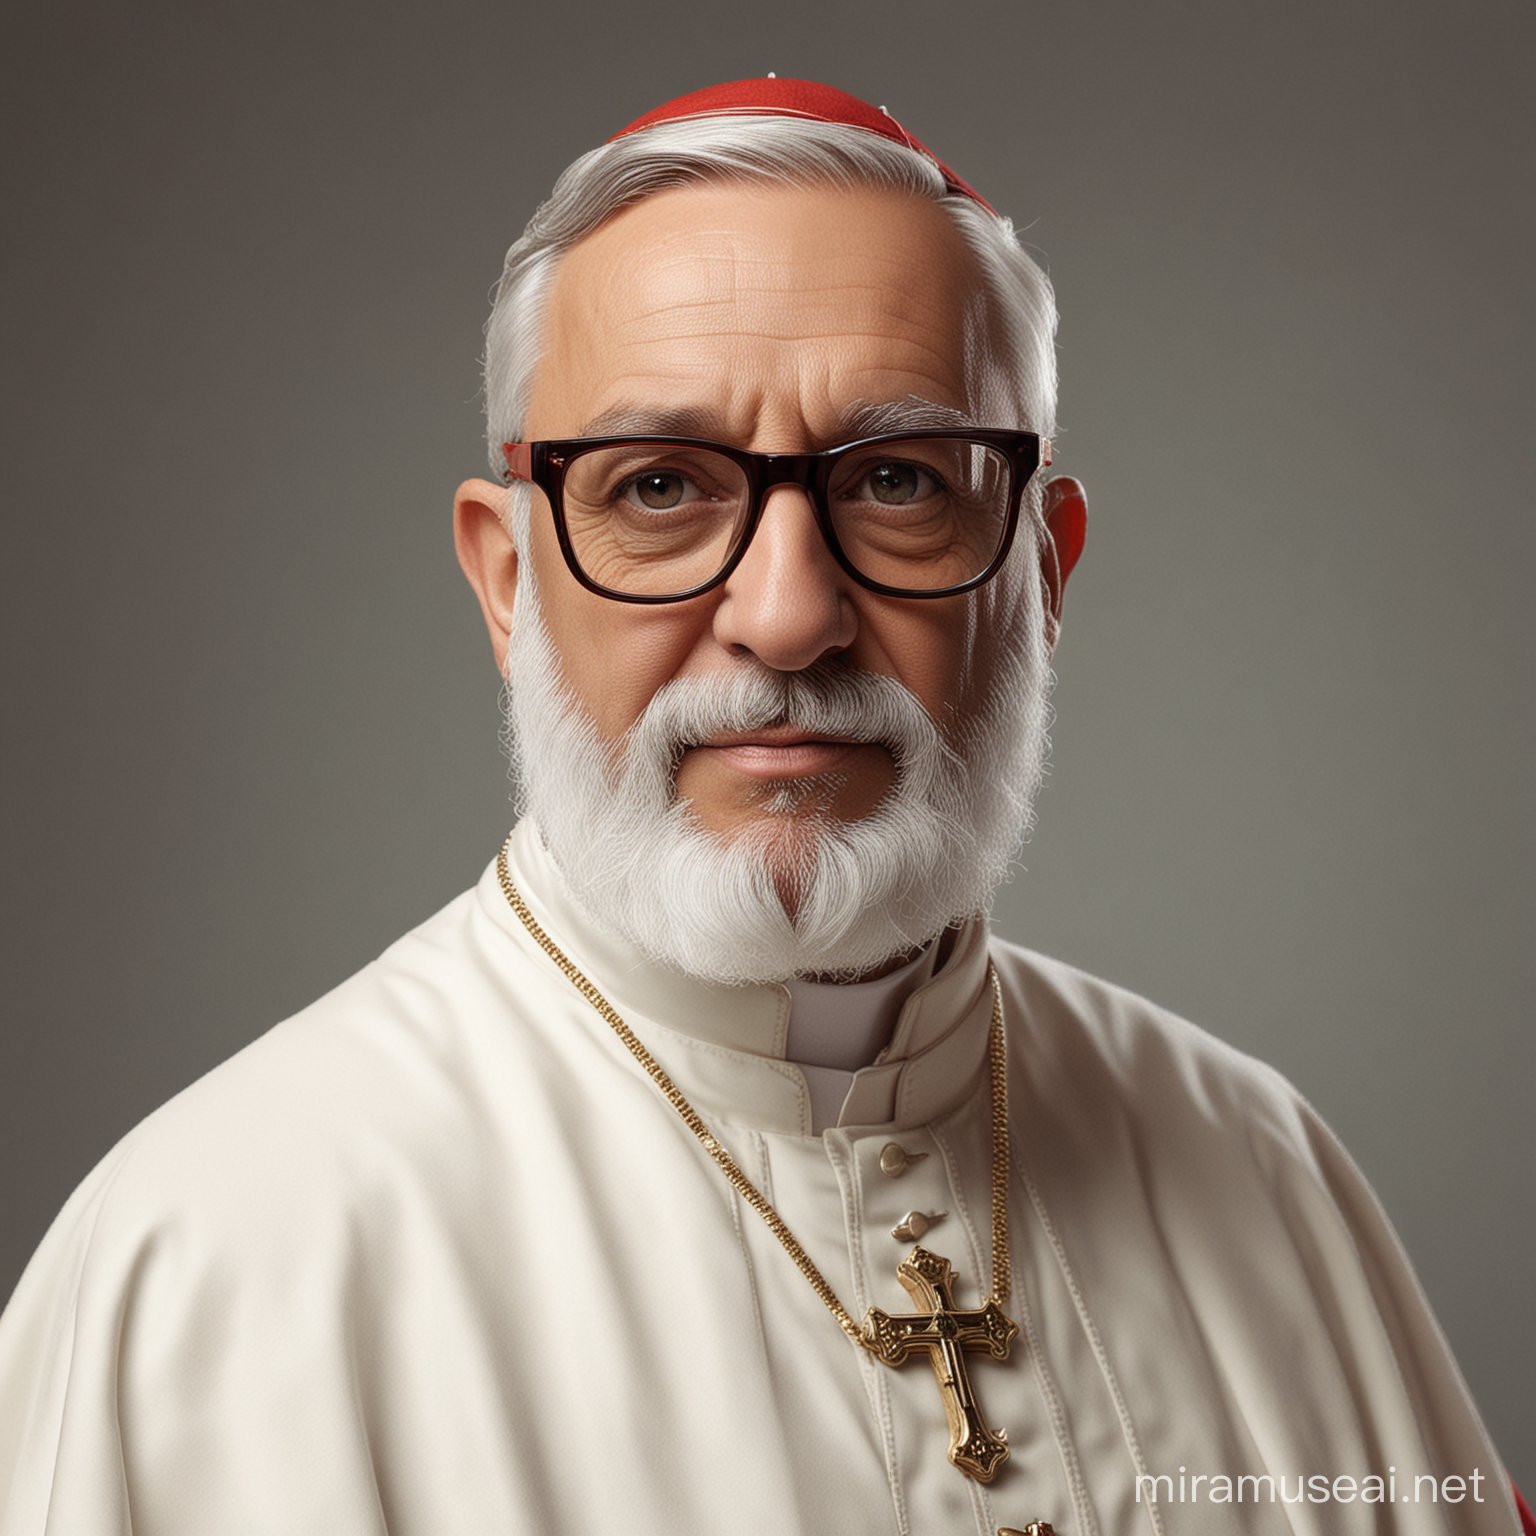 Cardenal ficticio con gafas y  barba de Vaticano vestido de blanco 